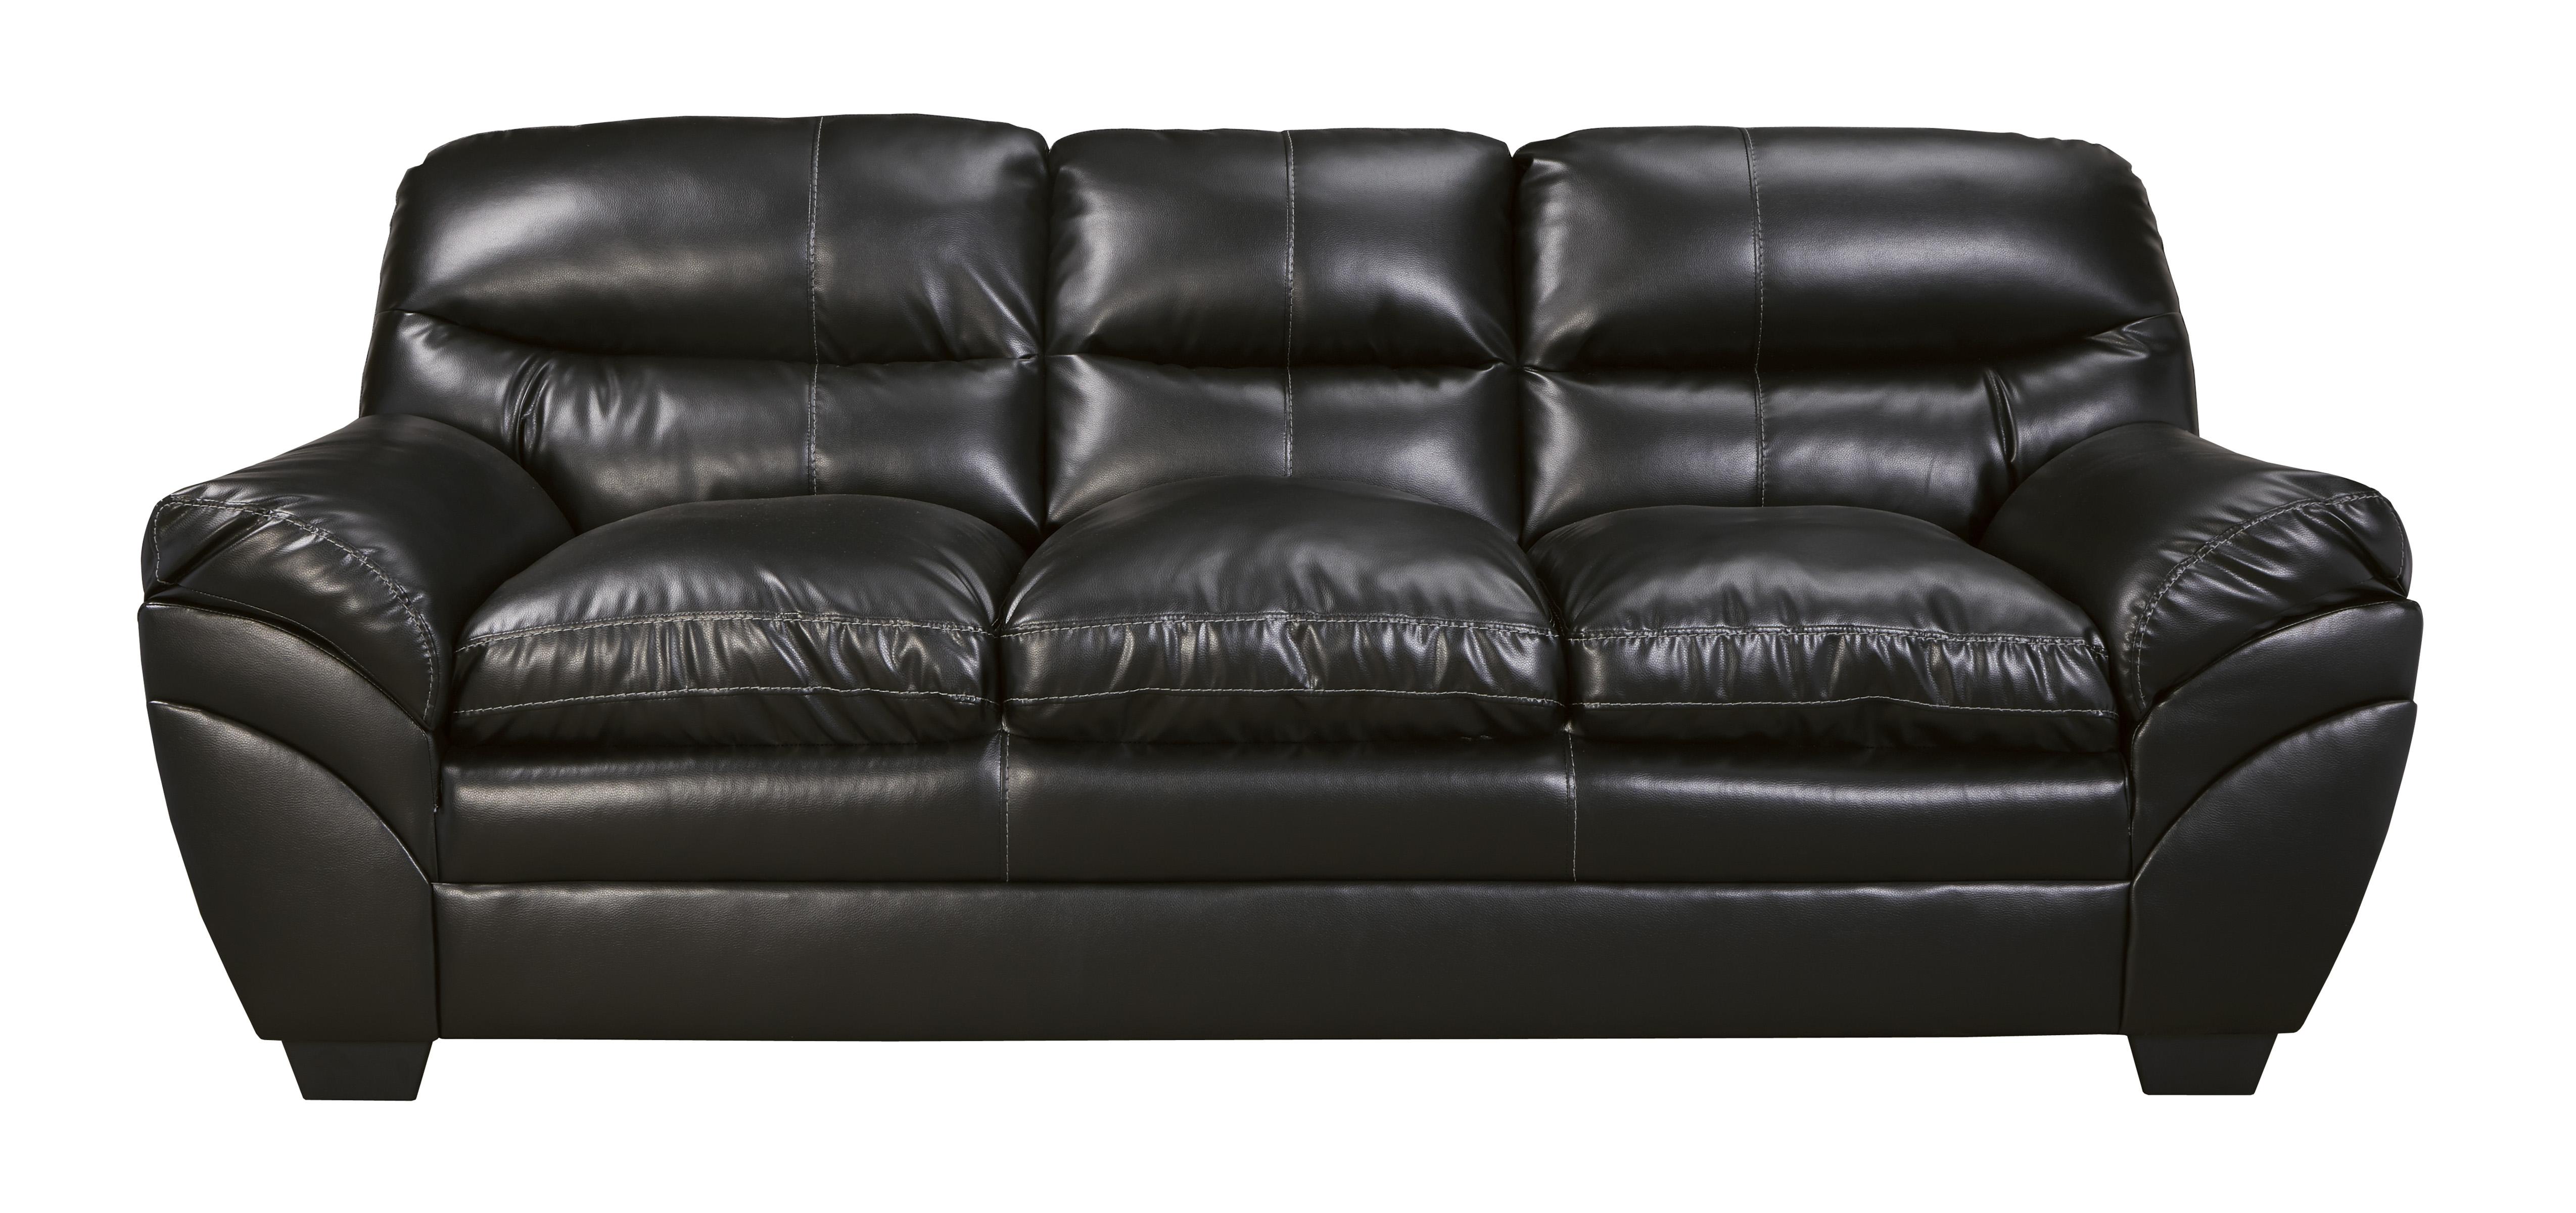 

    
Ashley Tassler DuraBlend 3 Piece Living Room Set in Black
